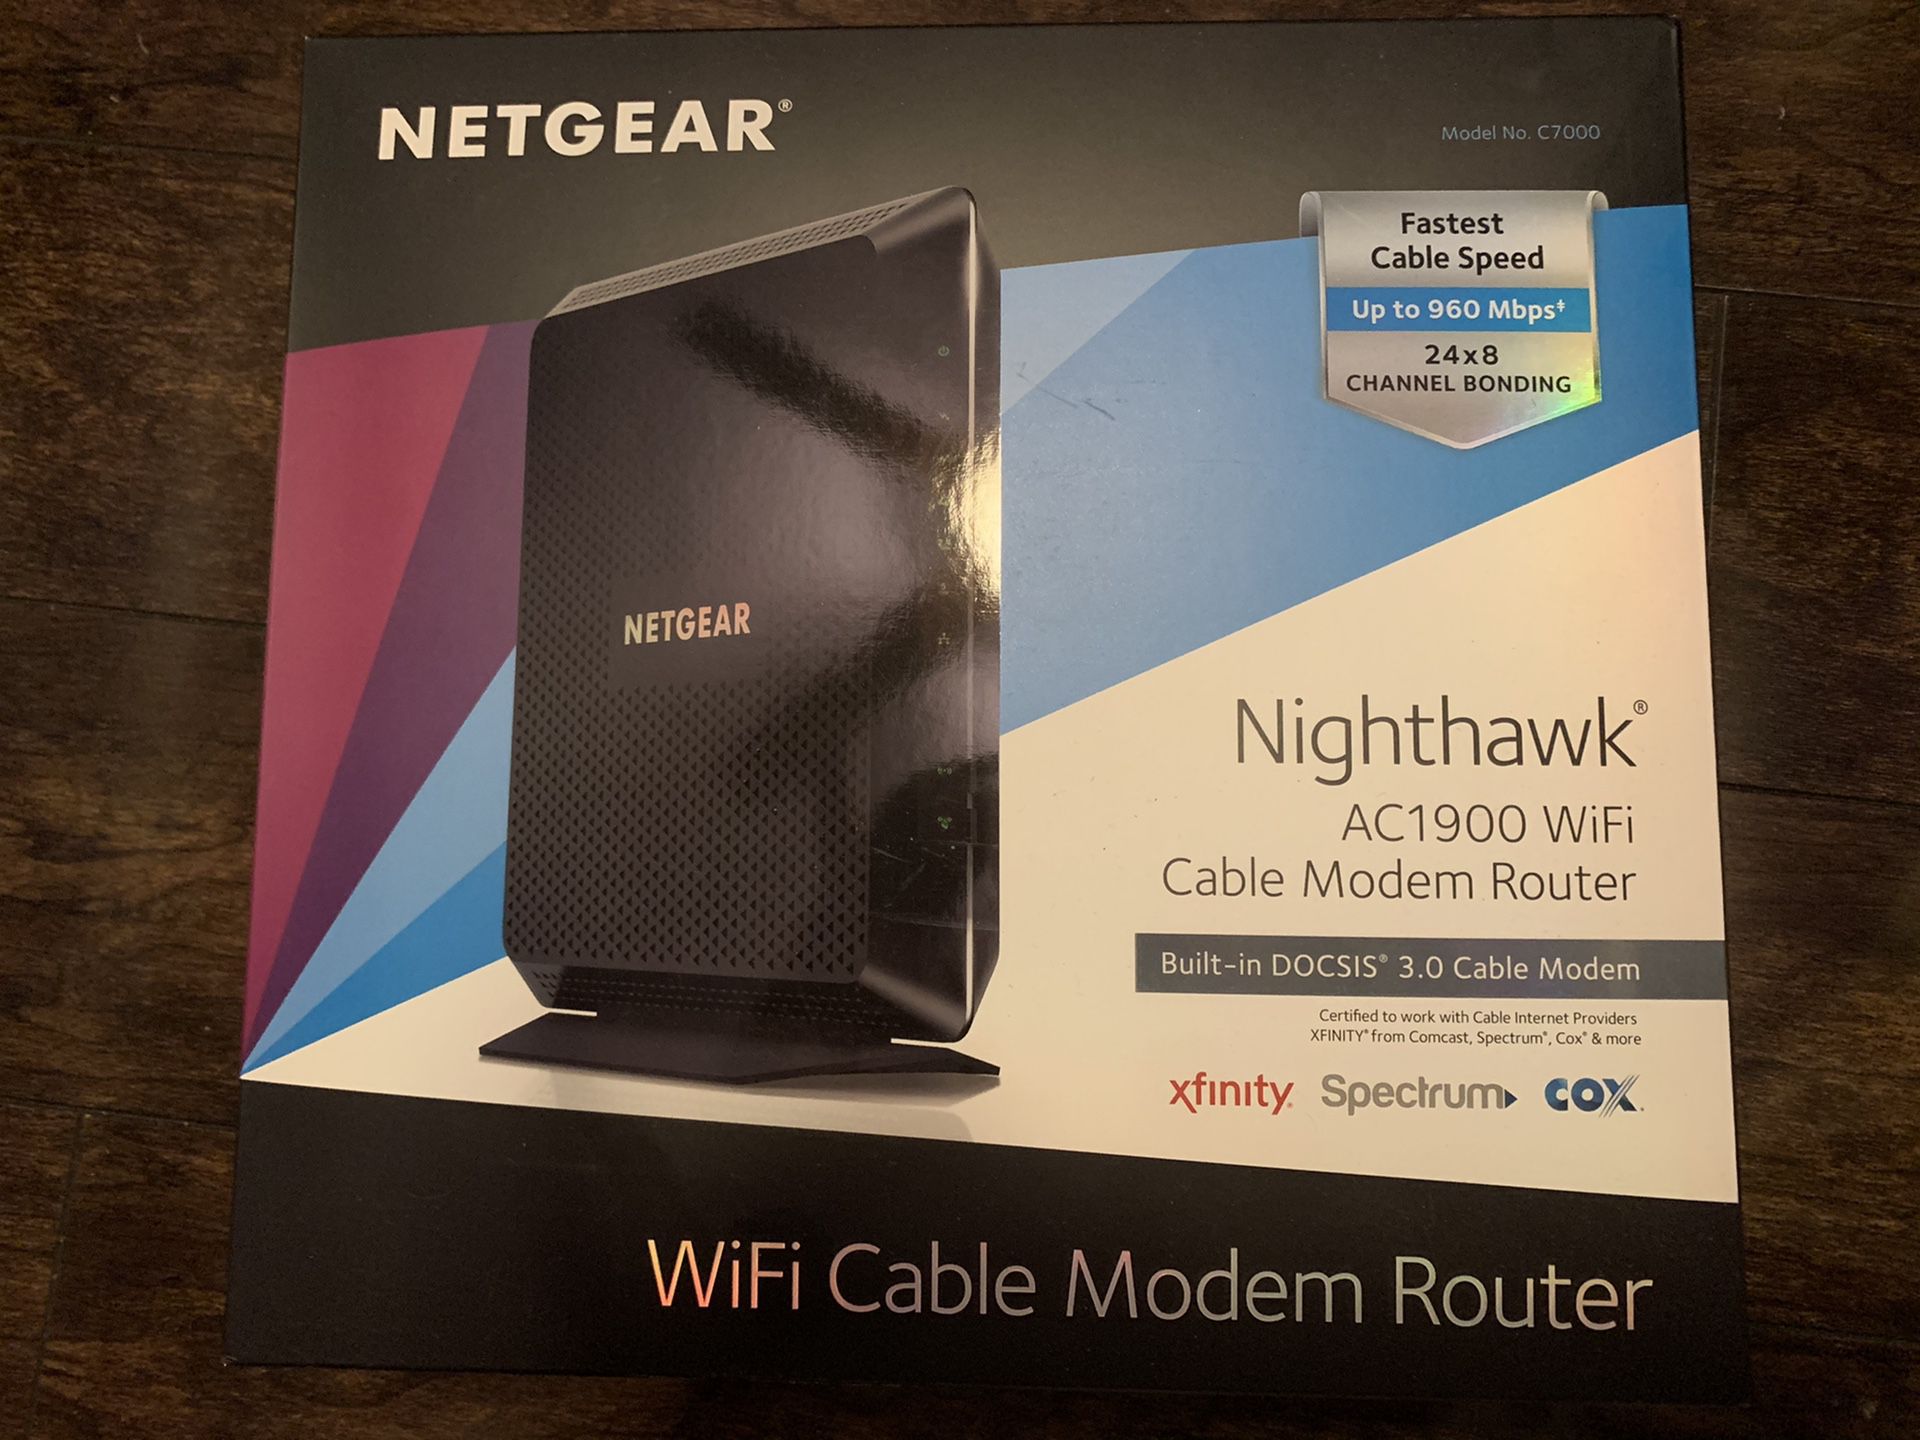 NETGEAR cable modem router